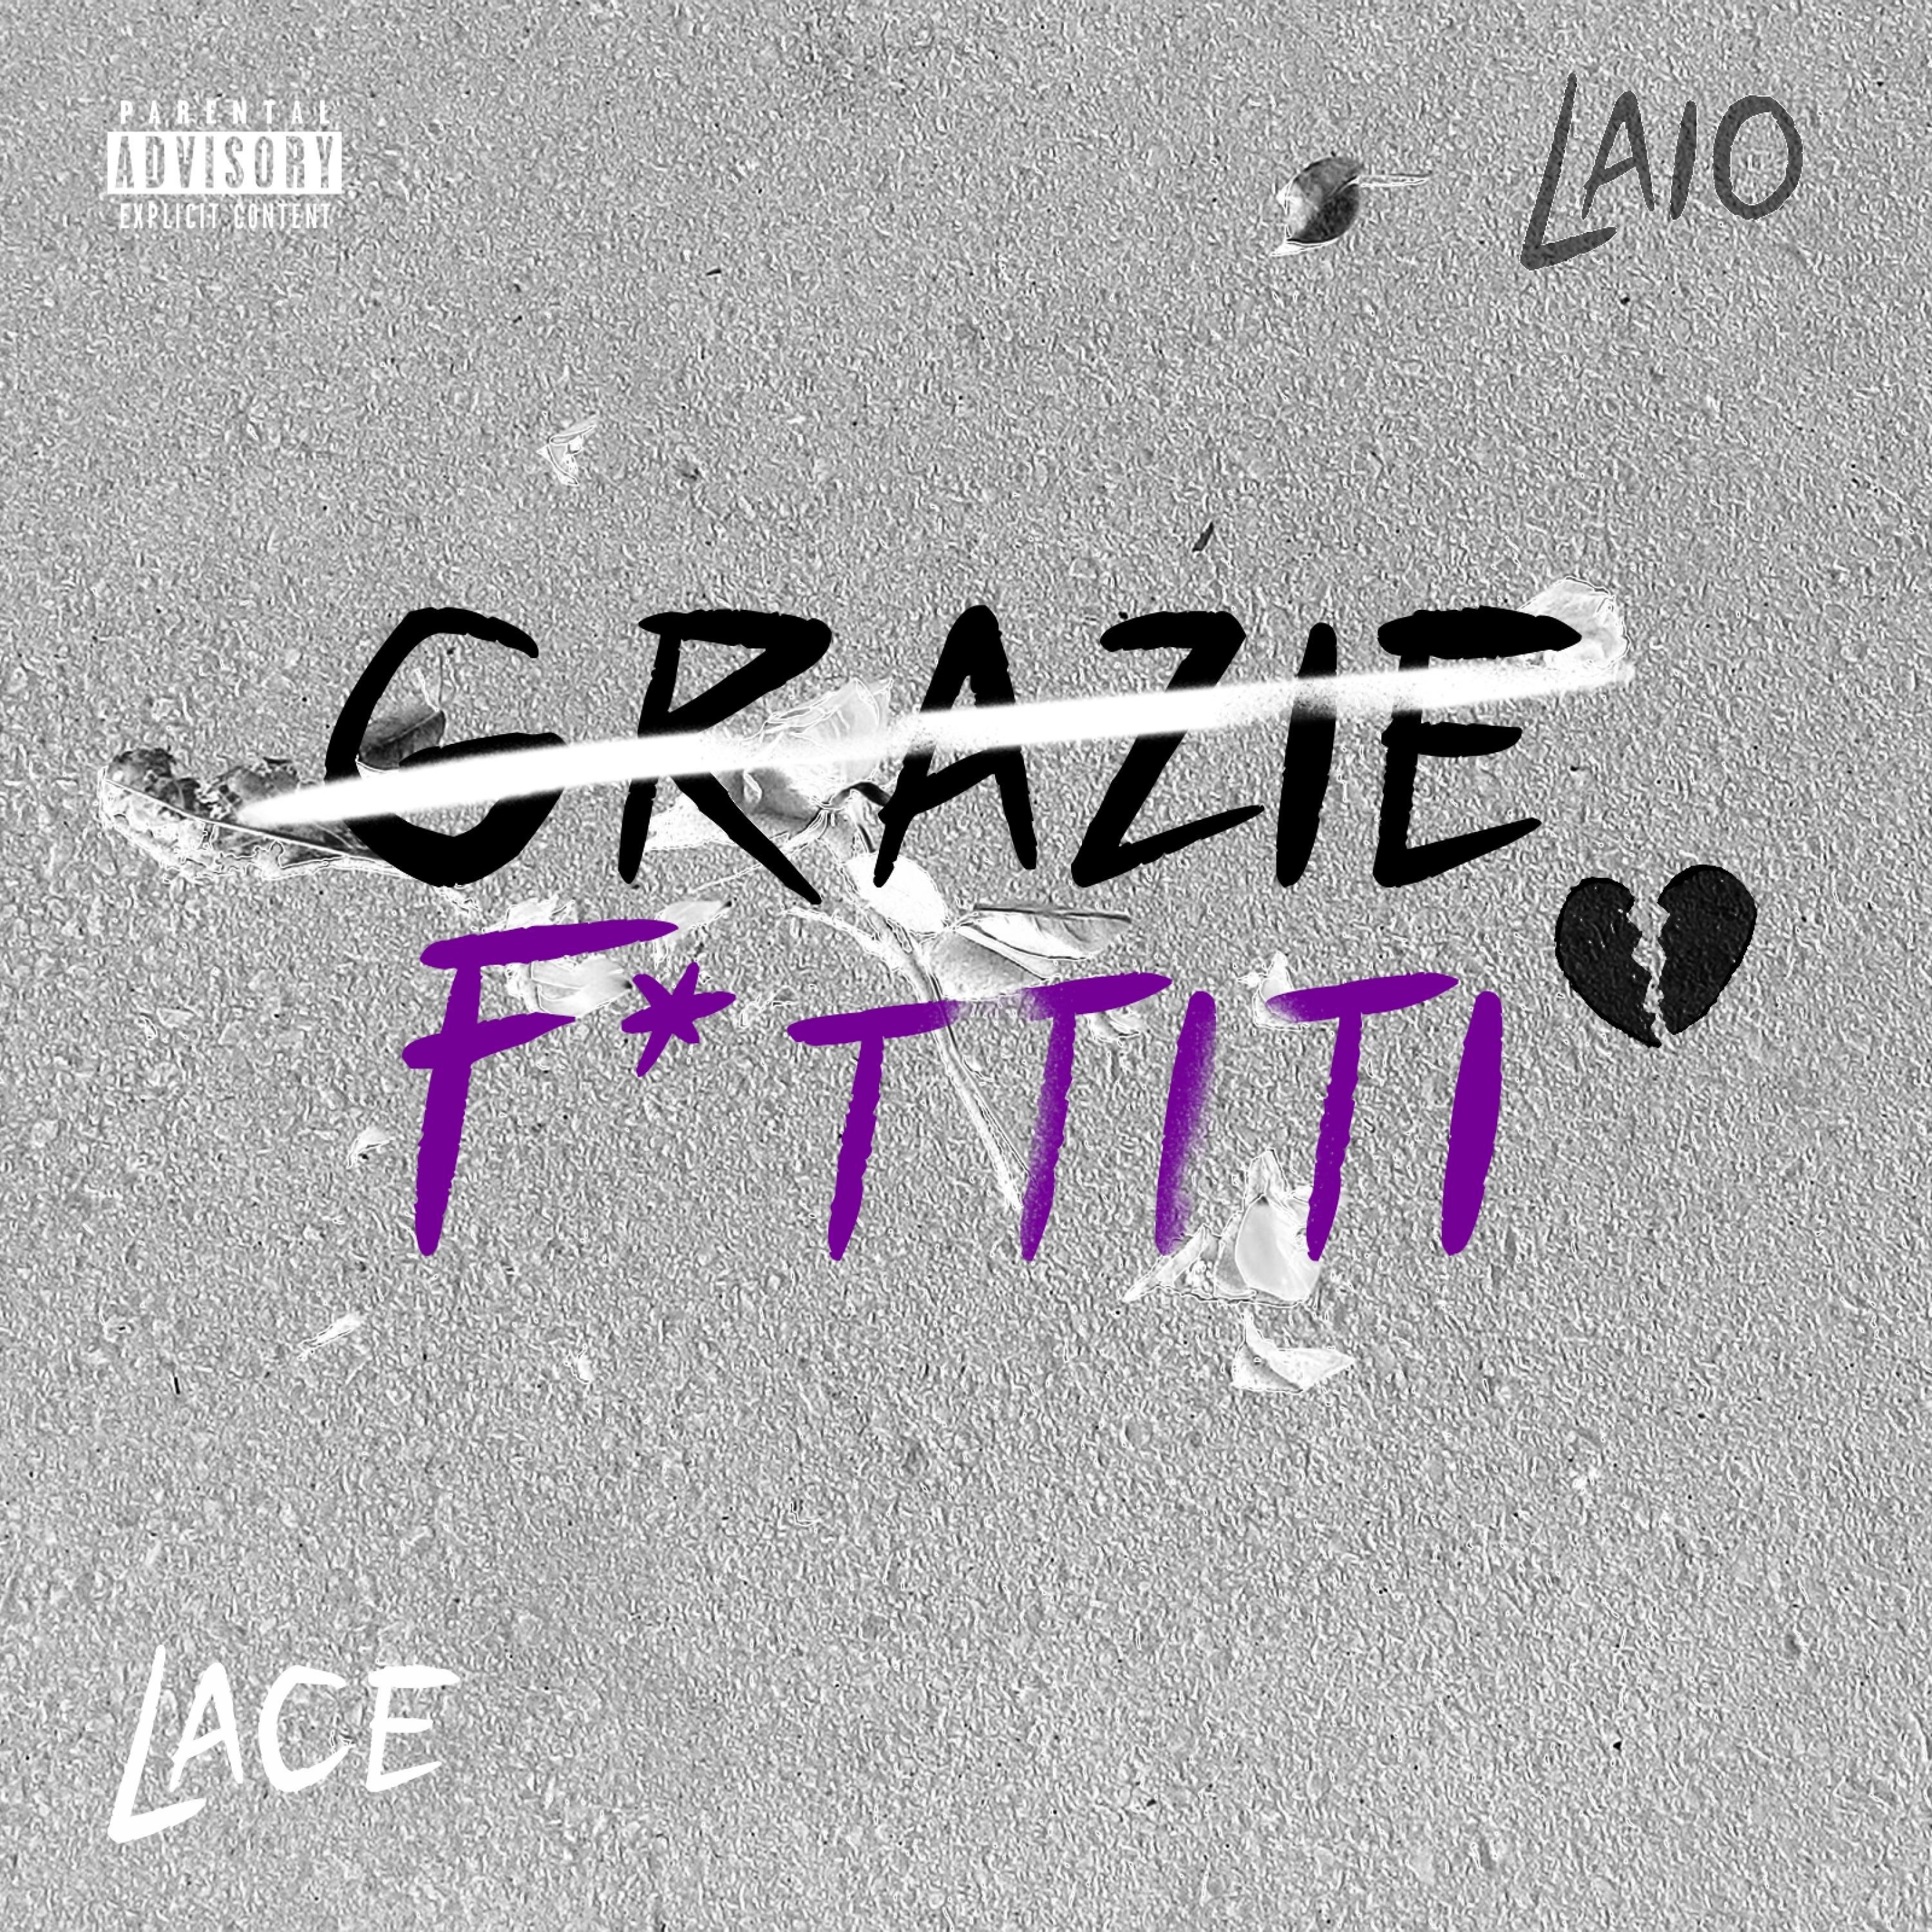 Lace - Grazie / F*ttiti (feat. Laio)